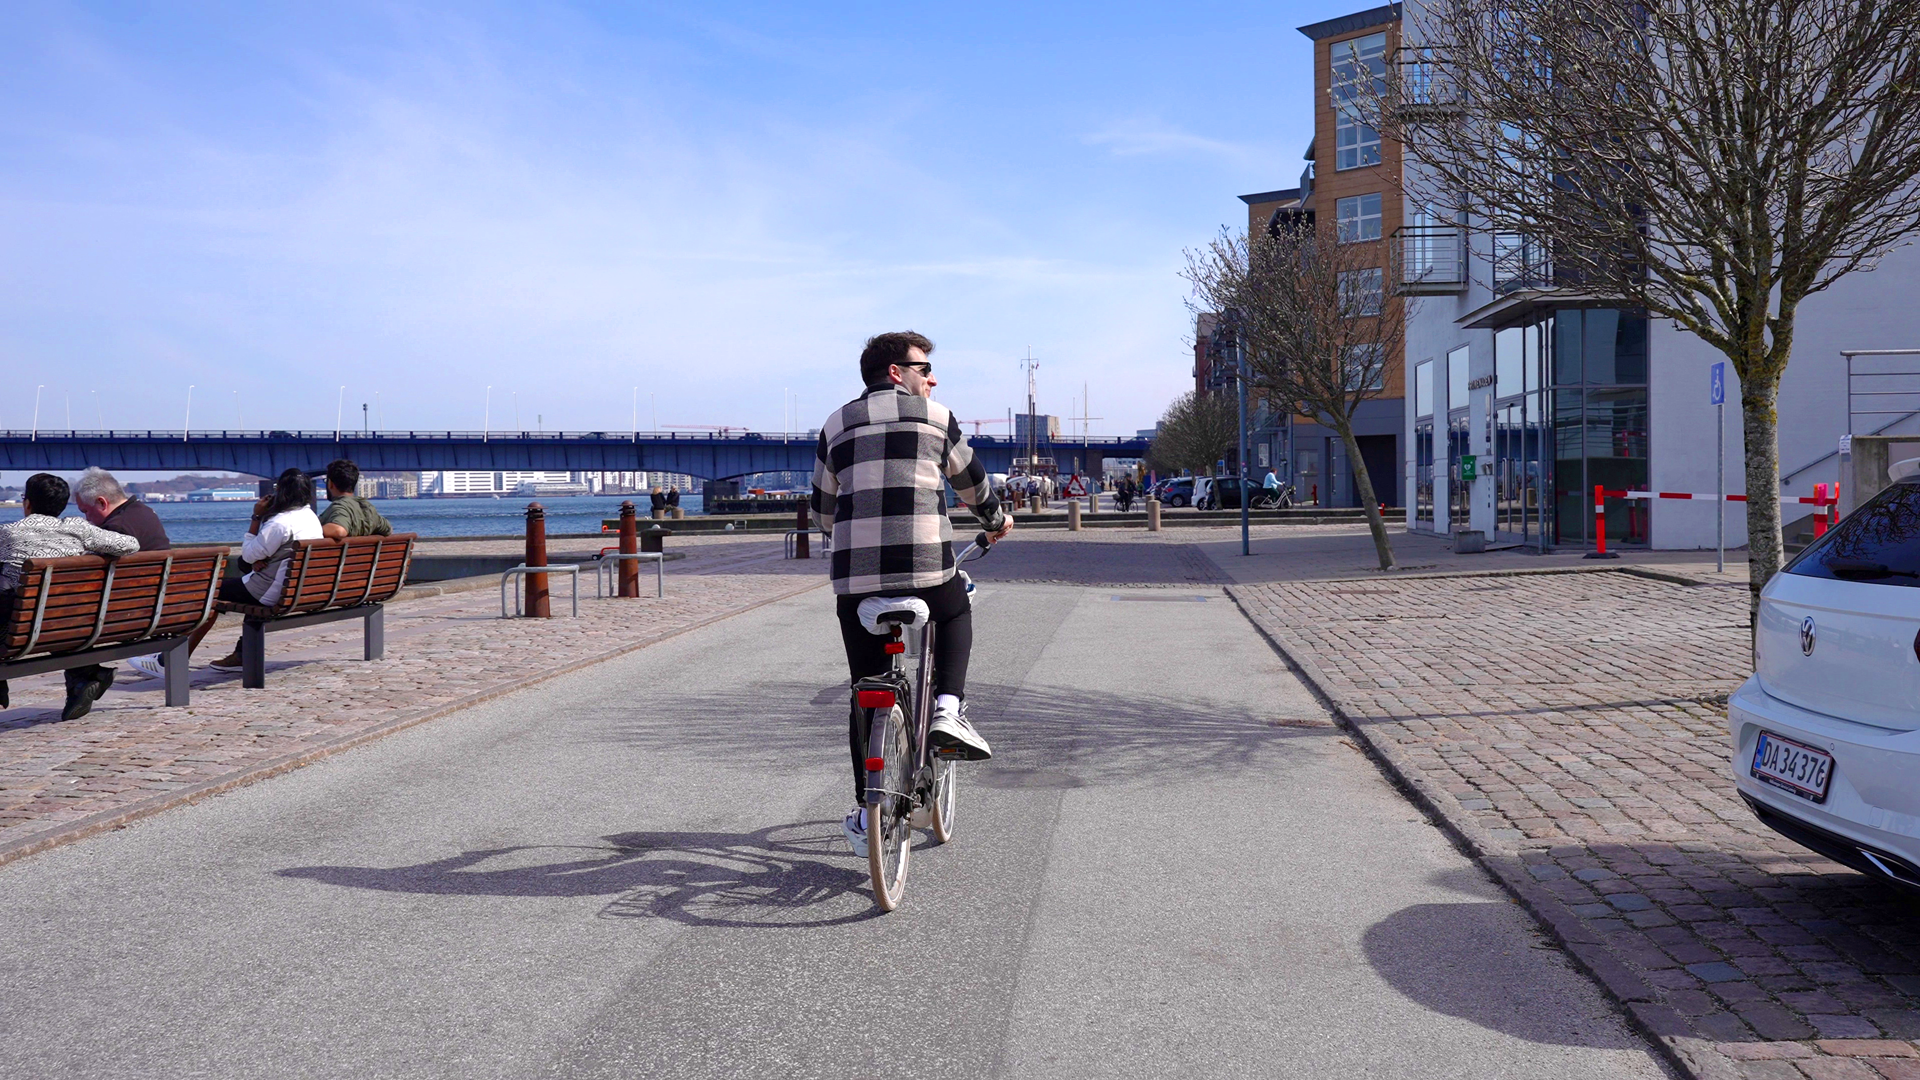 Cykelkulturen er stadig noget af det, som Cristian Goga sætter mest pris på i Danmark. Han peger også på det flade hierarki og muligheden for at blive det, man brænder mest for. Foto: Caroline Bundgaard